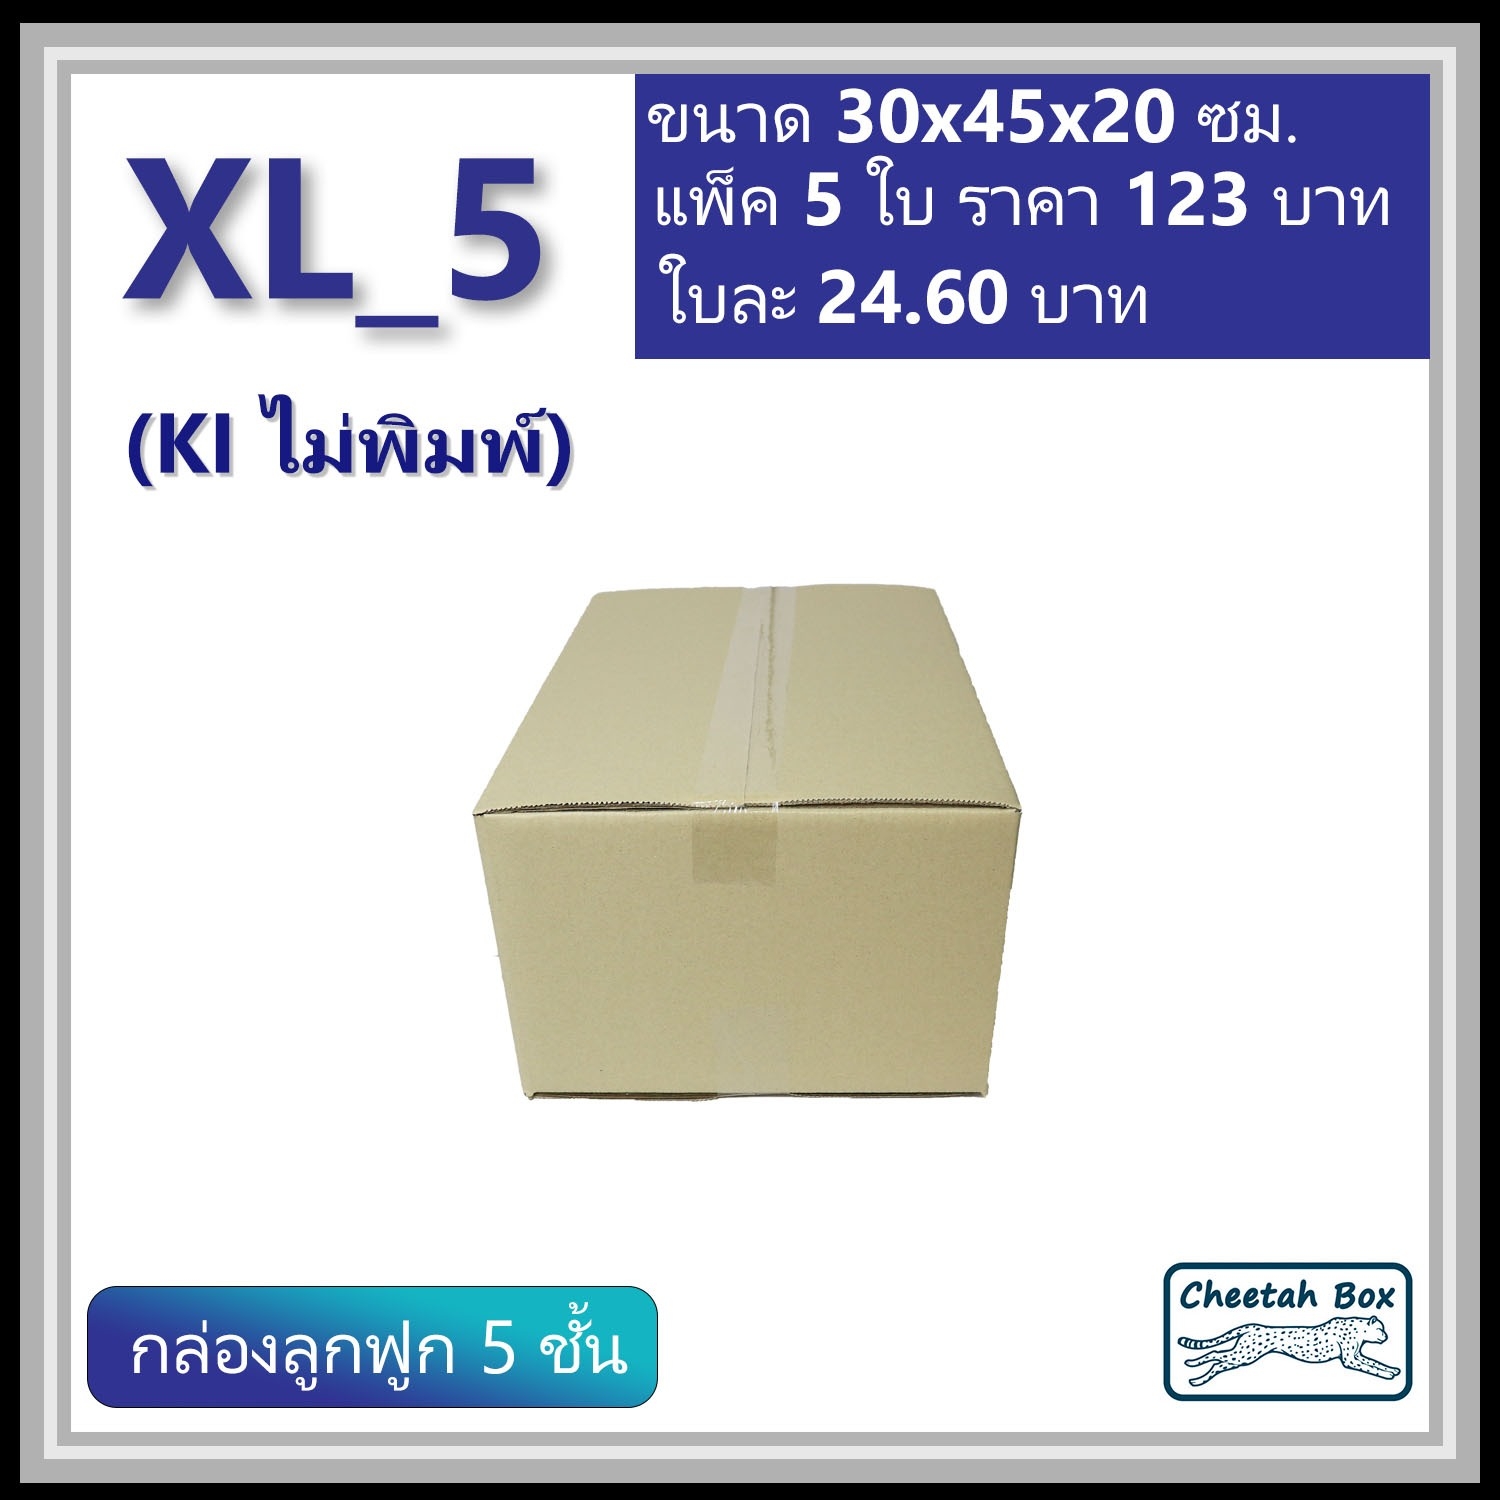 กล่องพัสดุ XL_5 ไม่พิมพ์ (Post Box) ลูกฟูก 5 ชั้น ขนาด 30W x 45L x 20H cm.